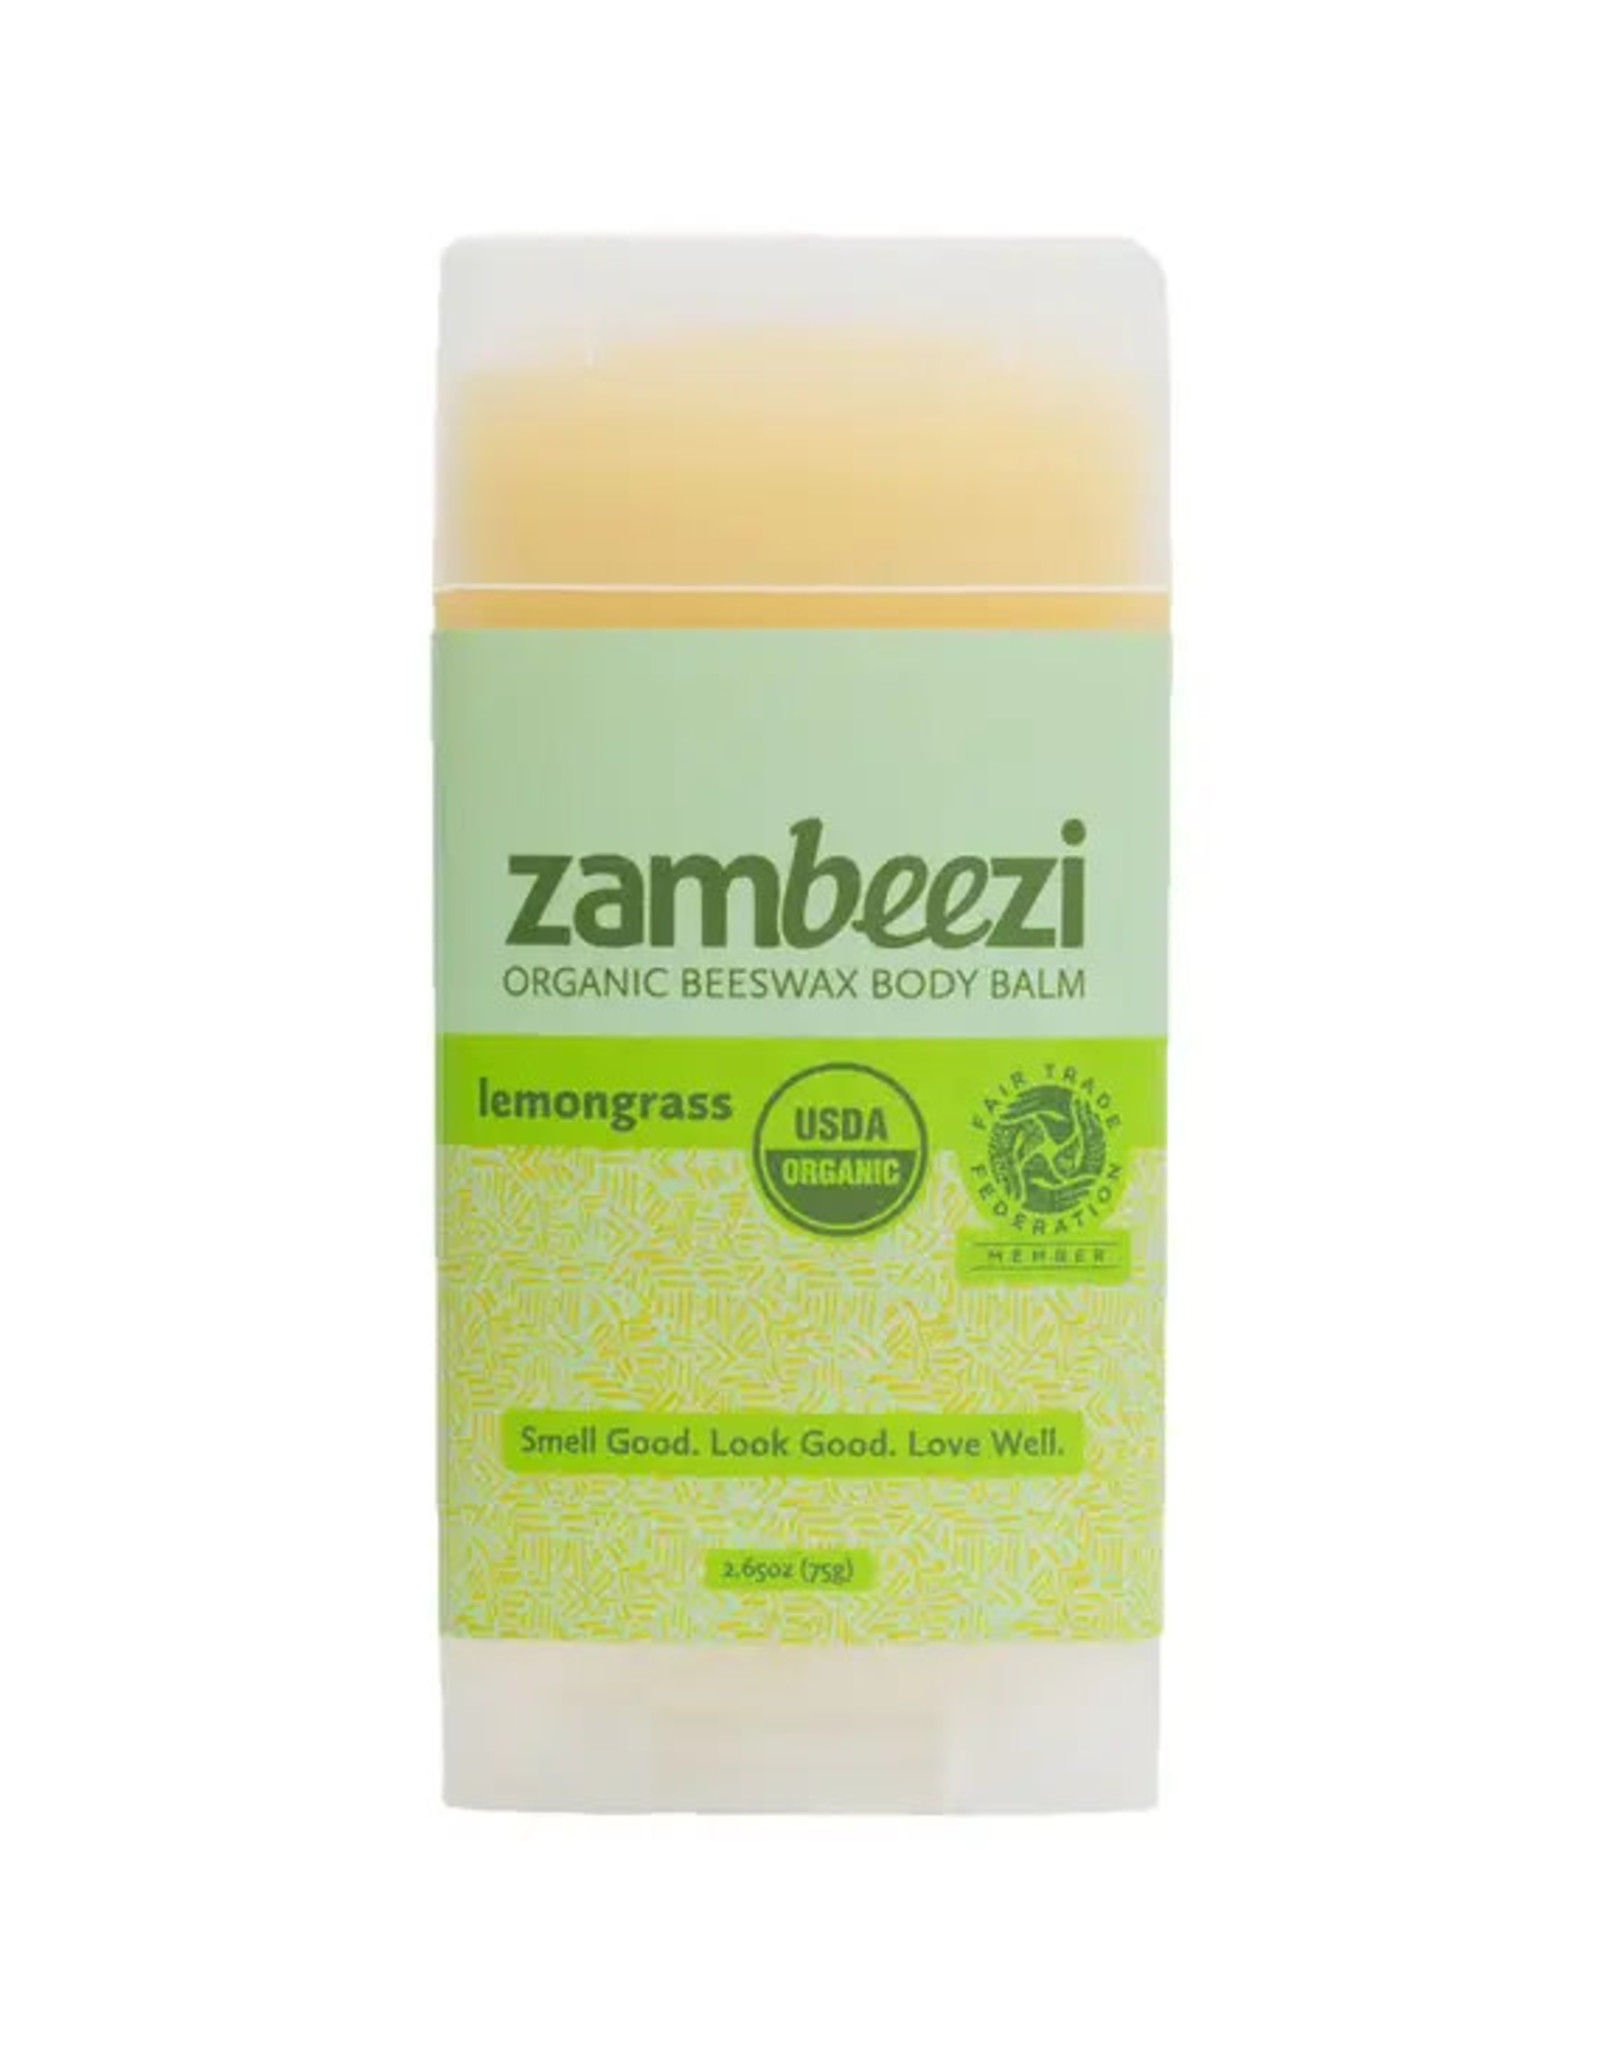 Zambeezi Lemongrass Organic Beeswax Body Balm